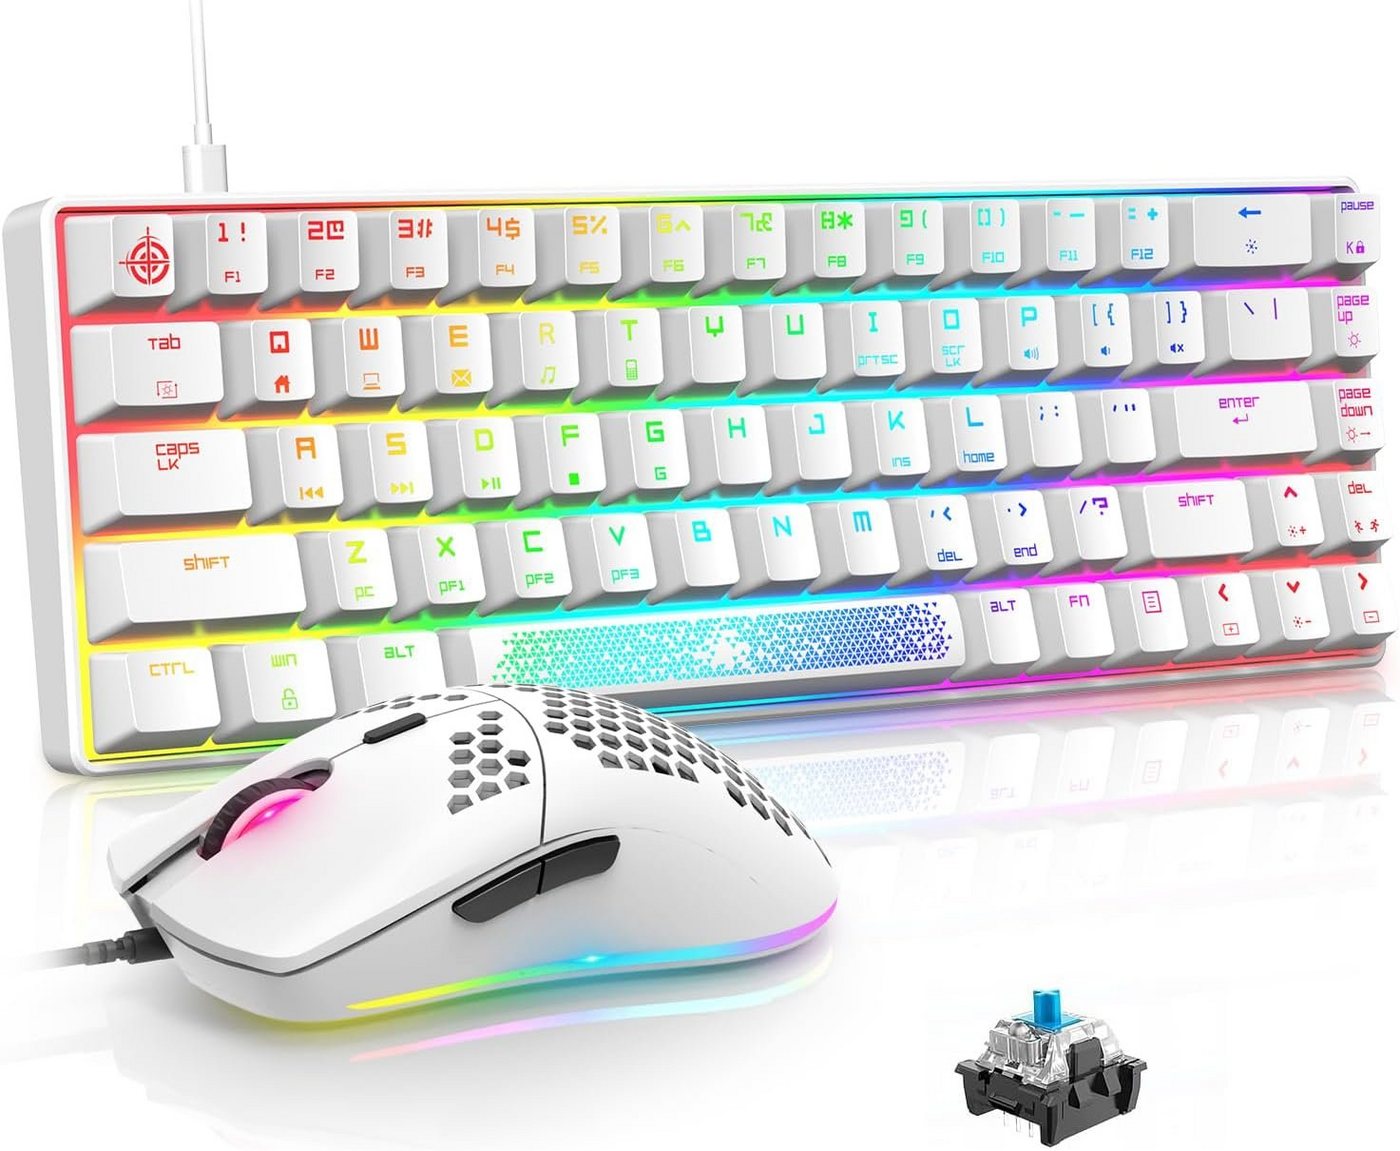 LexonElec MK14 65% kompakt Weiß pc mac Gaming Tastatur- und Maus-Set, mit Kabel RGB handballenauflage typ c Gamer tastaturen ergonomische von LexonElec